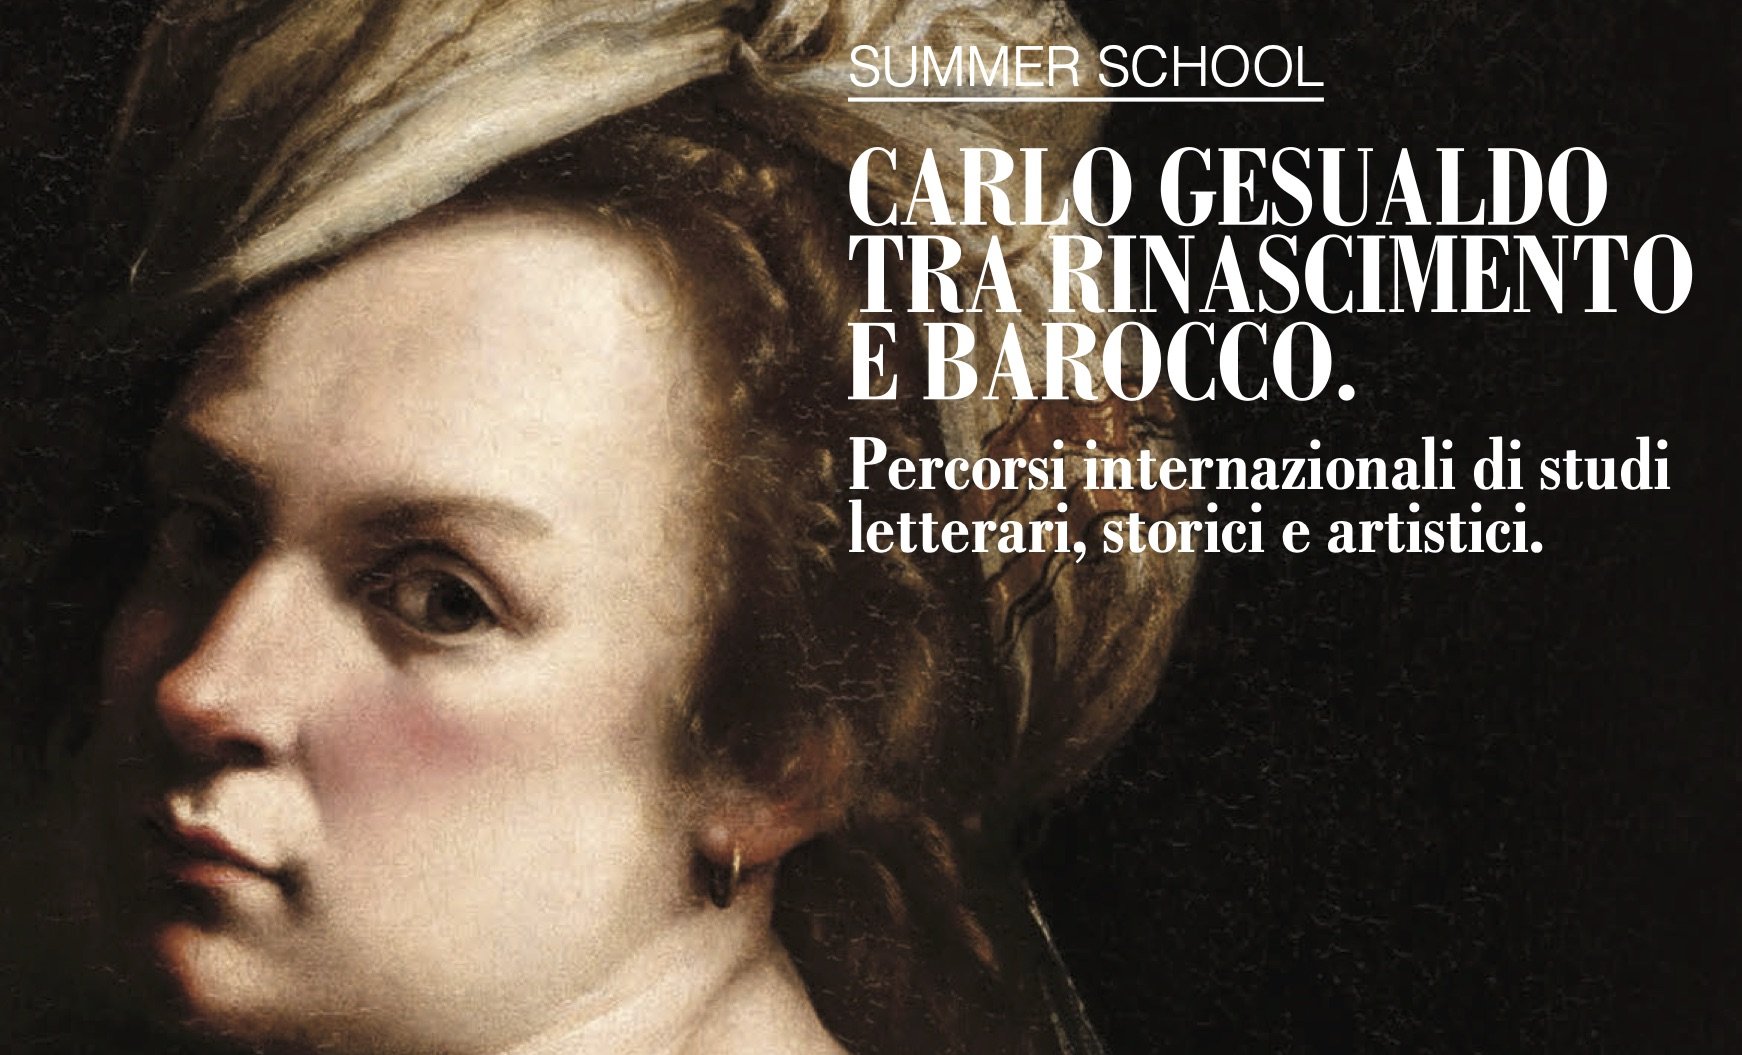 Carlo Gesualdo tra Rinascimento e Barocco - Summer School